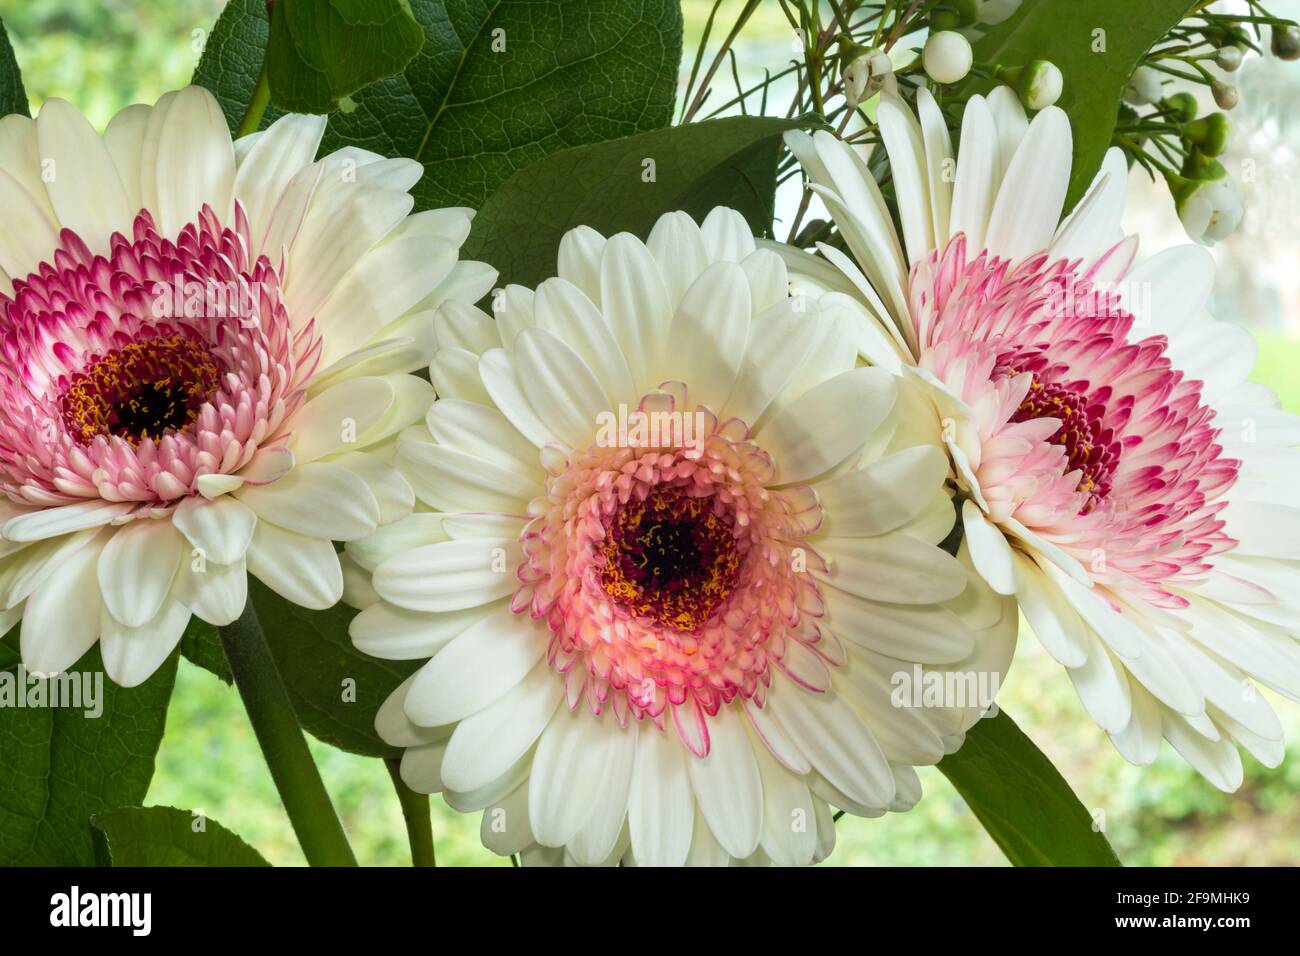 WA19485-00...WASHINGTON - Rosa und weiße Gerbara blüht in einem Blumenstrauß. Stockfoto